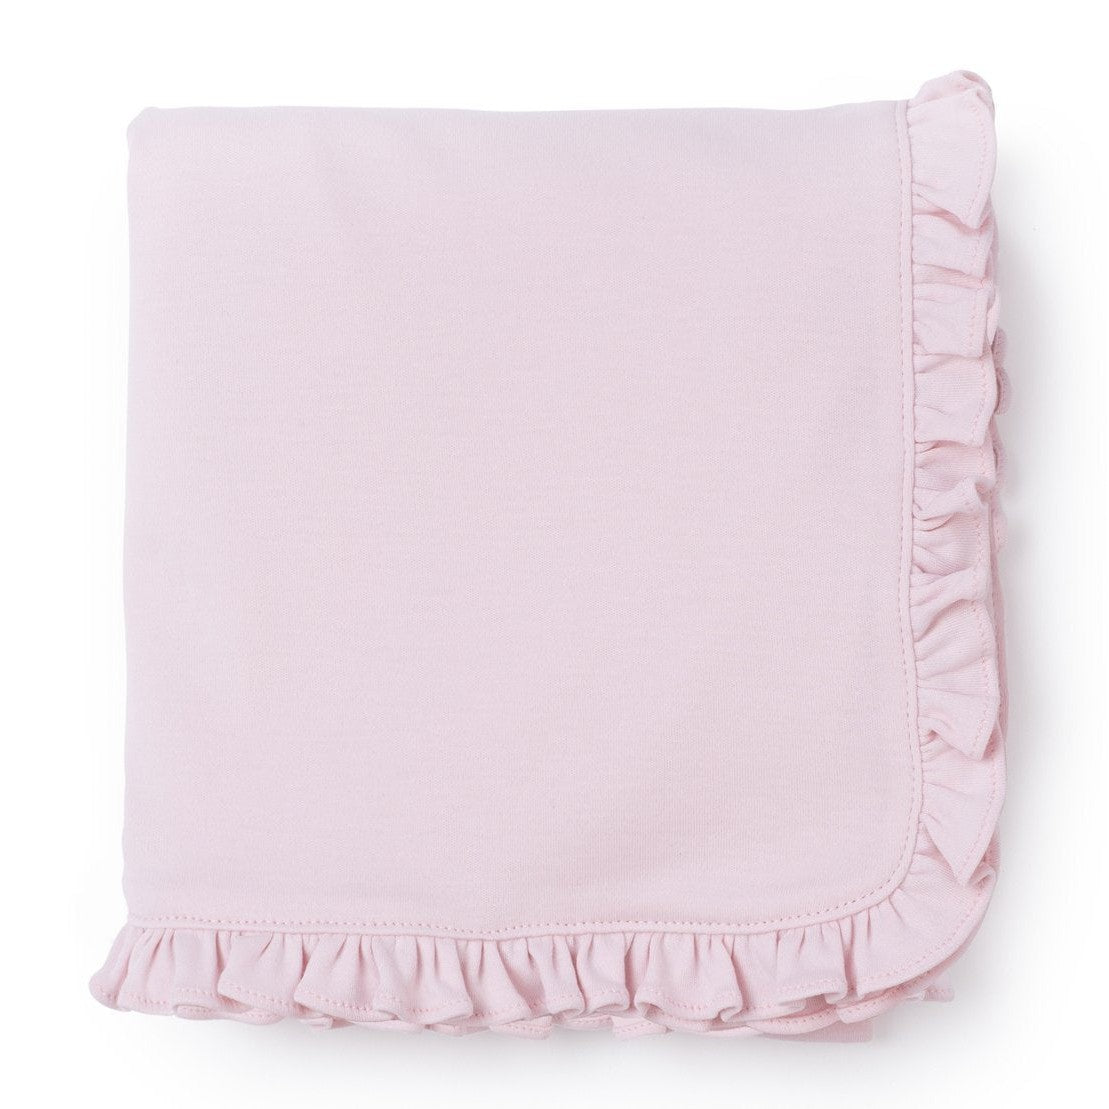 Ruffled Edge Pima Cotton Blanket - Light Pink - HoneyBug 